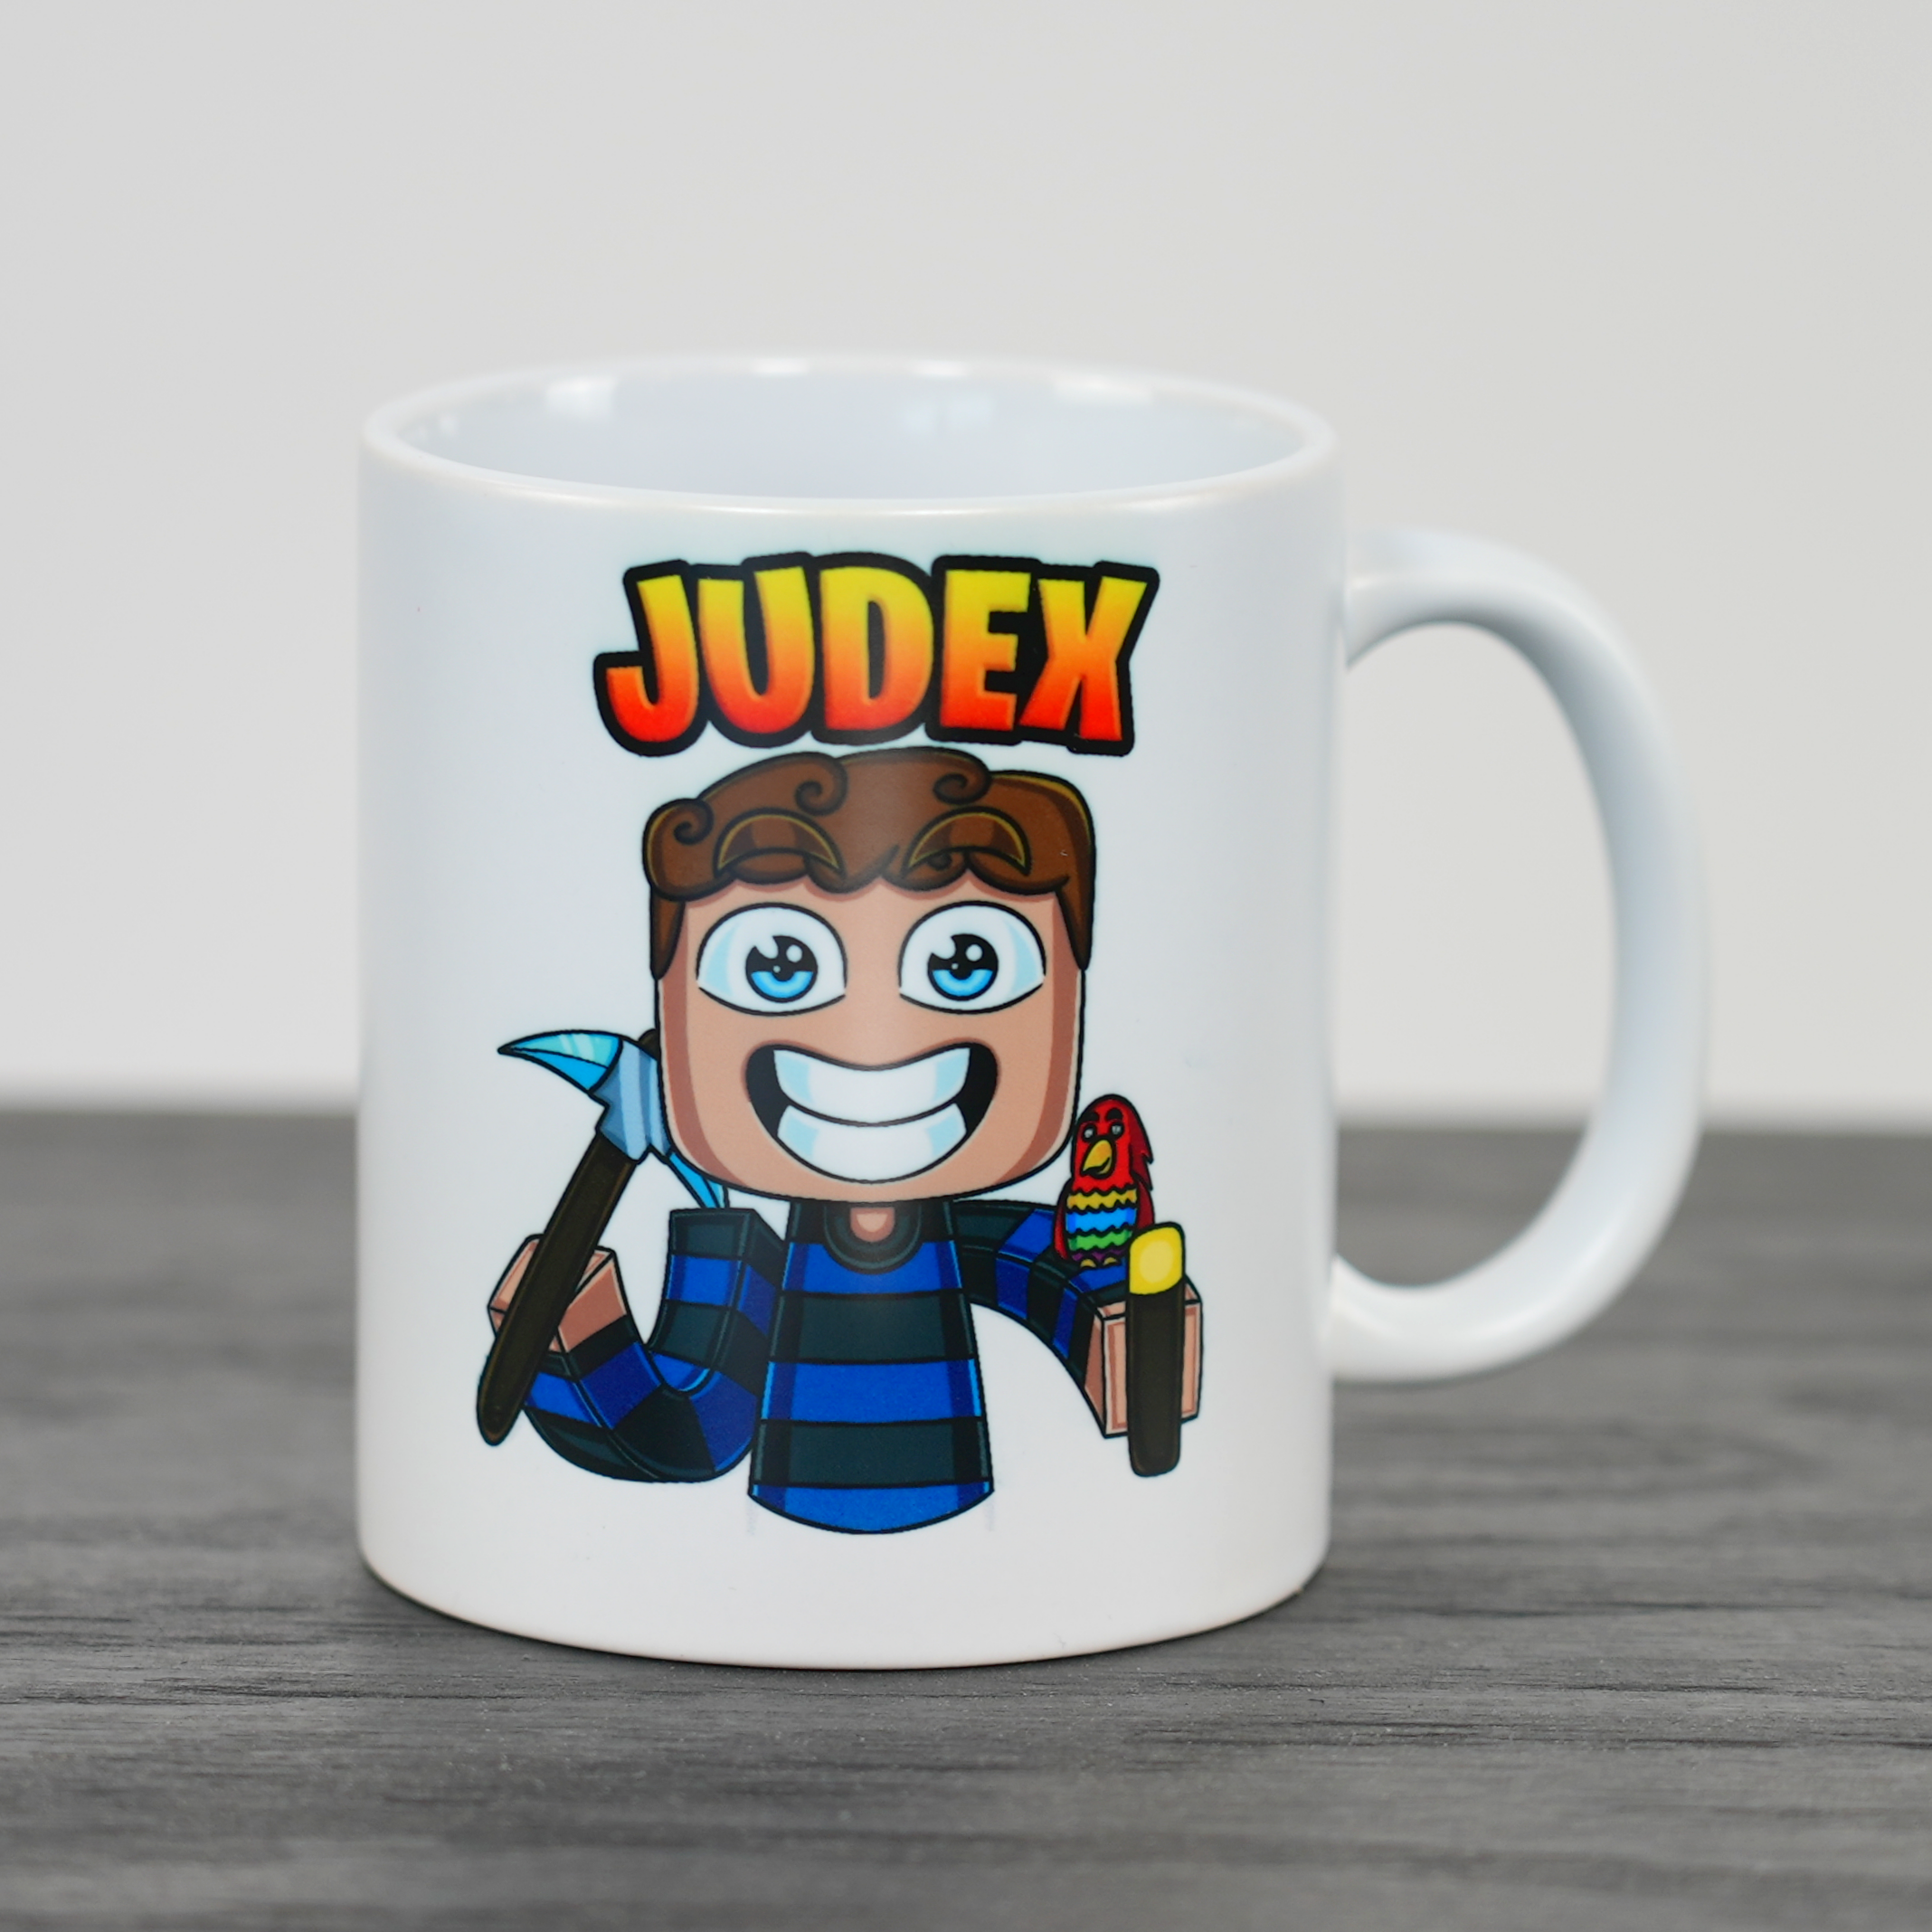 Judex Miner Cup